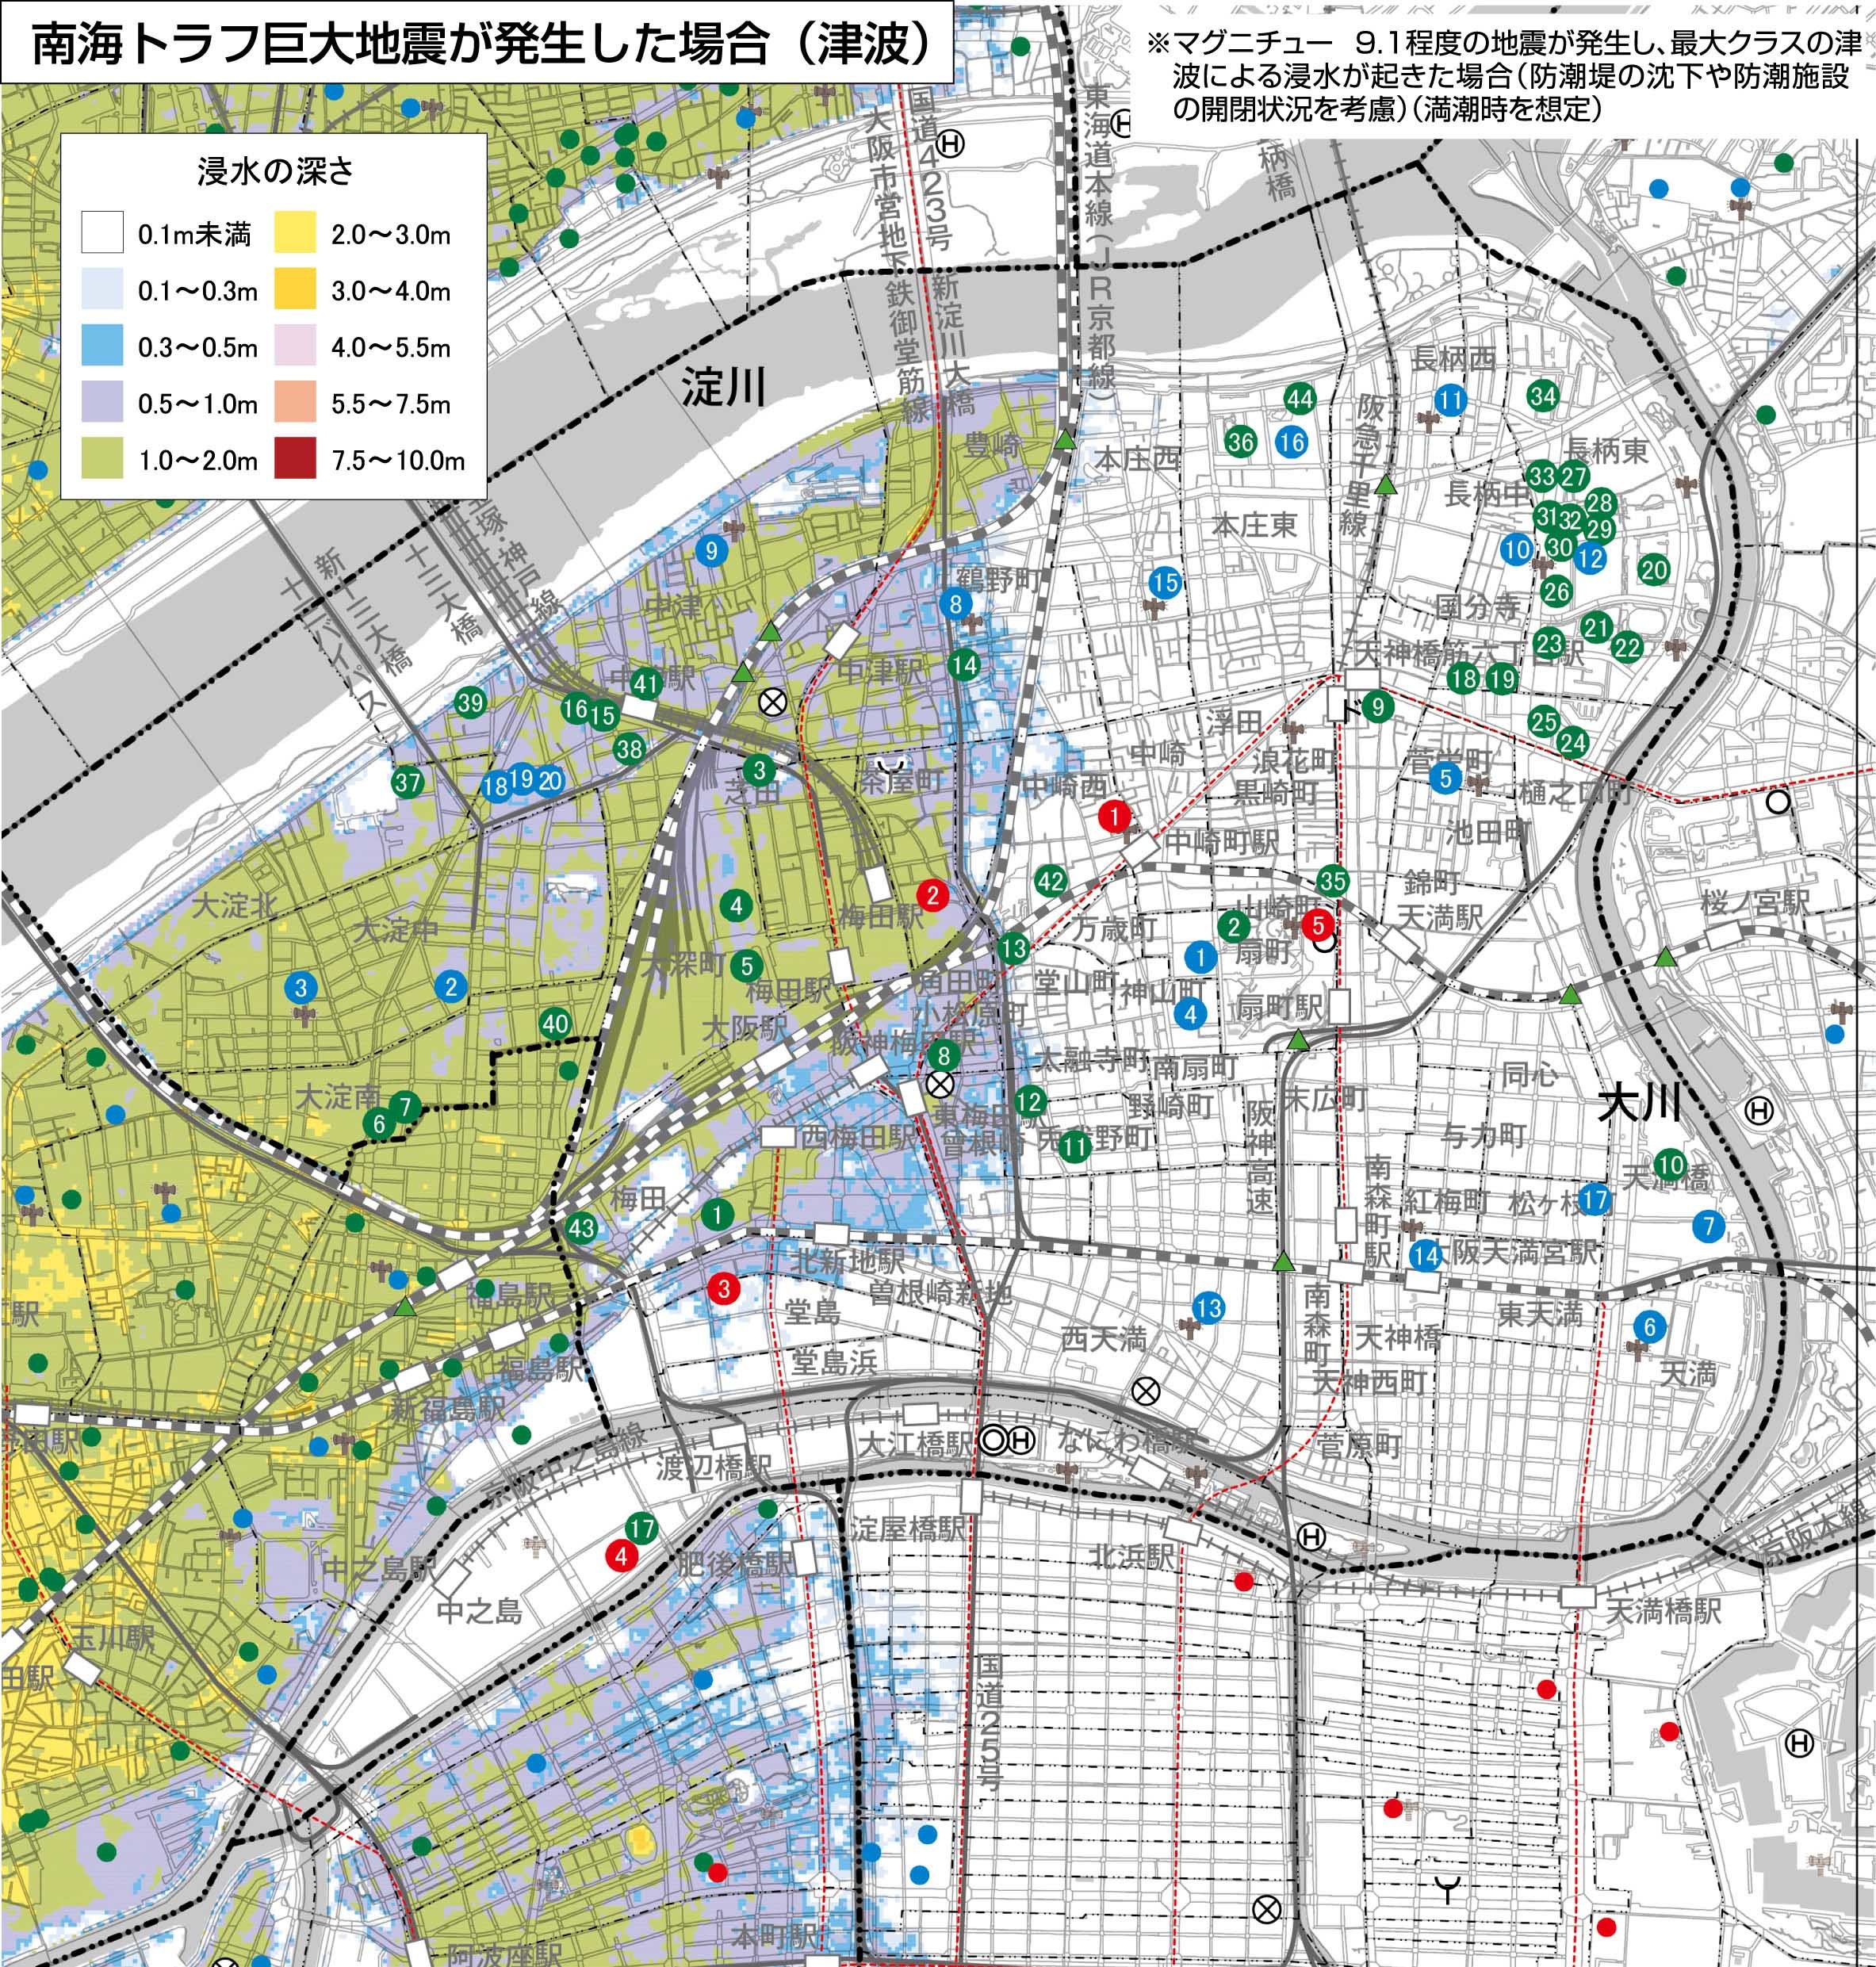 大阪市 水害ハザードマップ 北区 災害に備える ハザードマップ